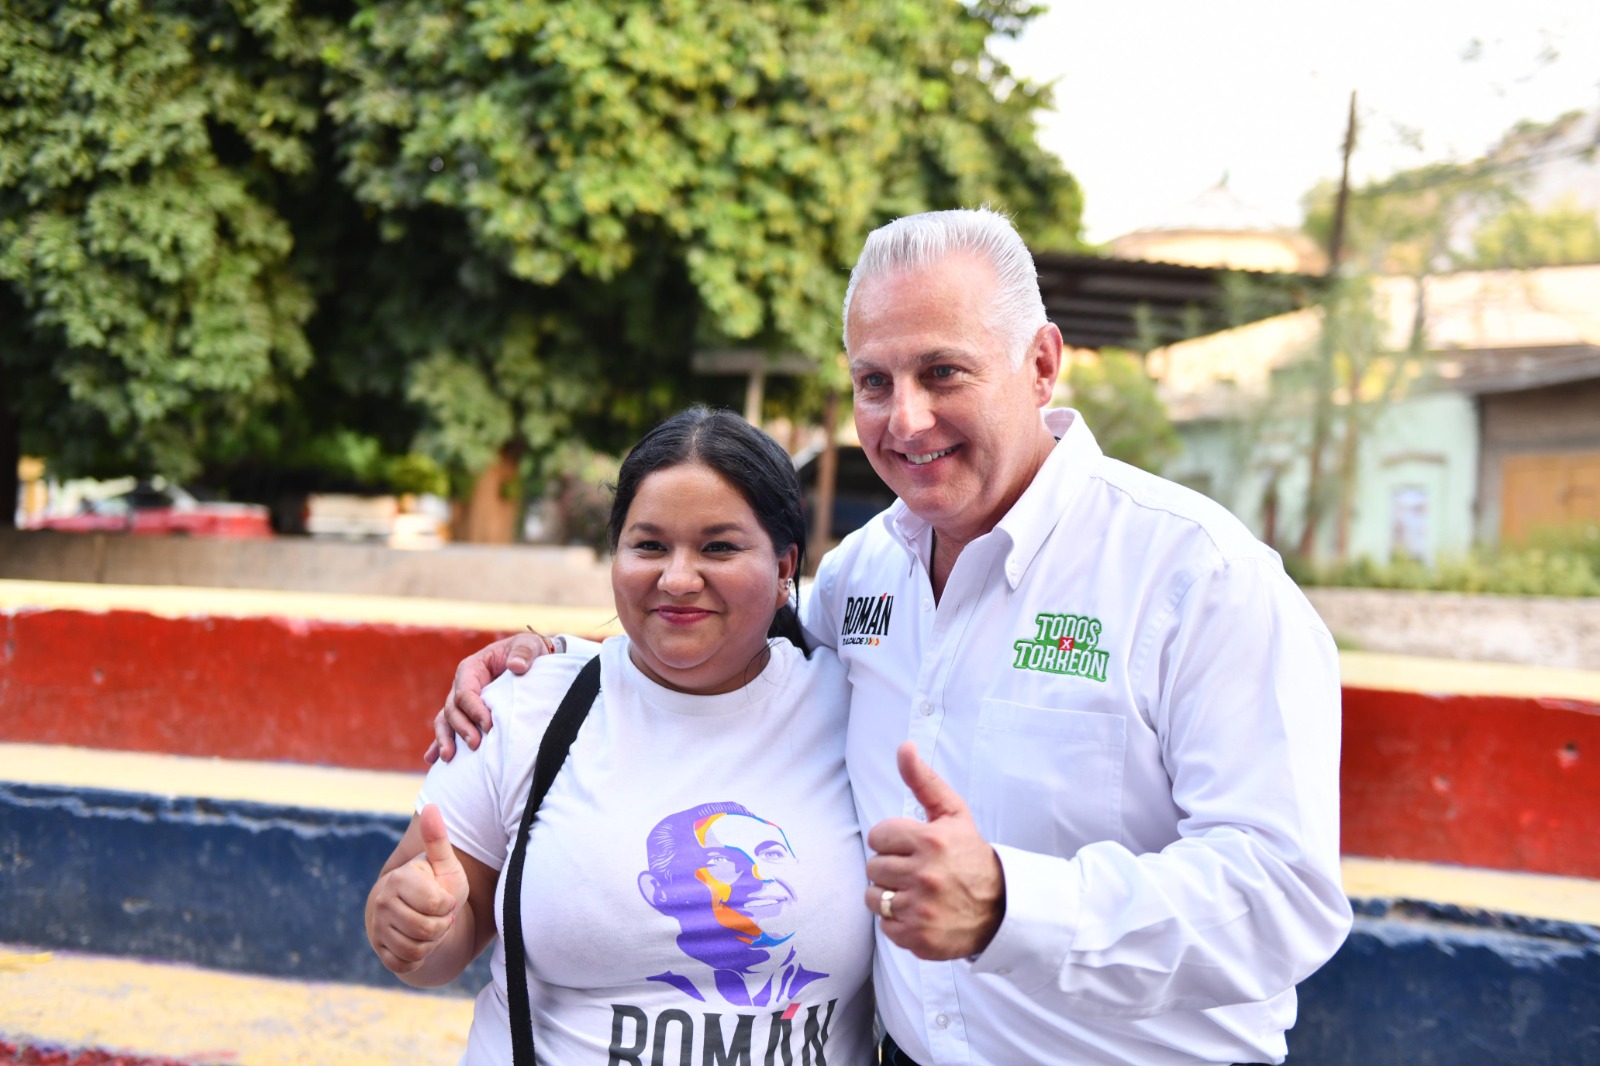 “Gracias a su apoyo, vamos a construir el mejor Torreón de la historia” Román Cepeda